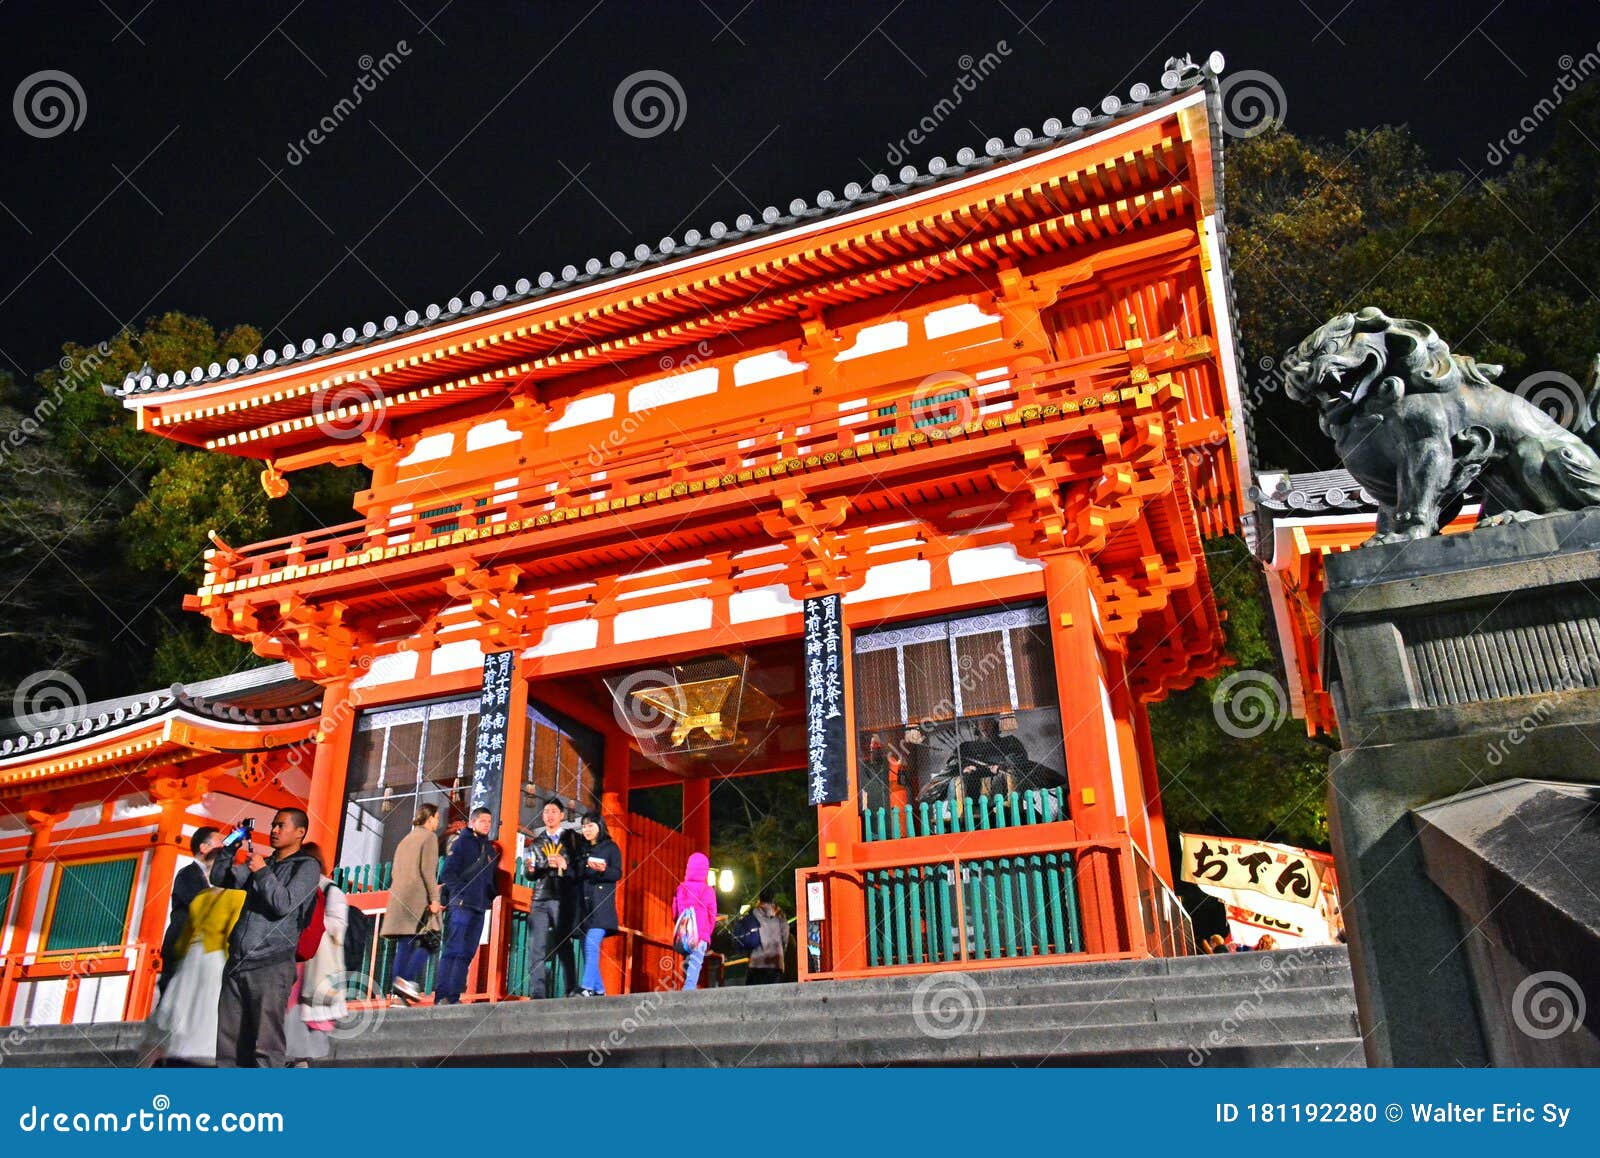 日本京都八坂神社入口正面编辑类图片 图片包括有日本京都八坂神社入口正面 181192280